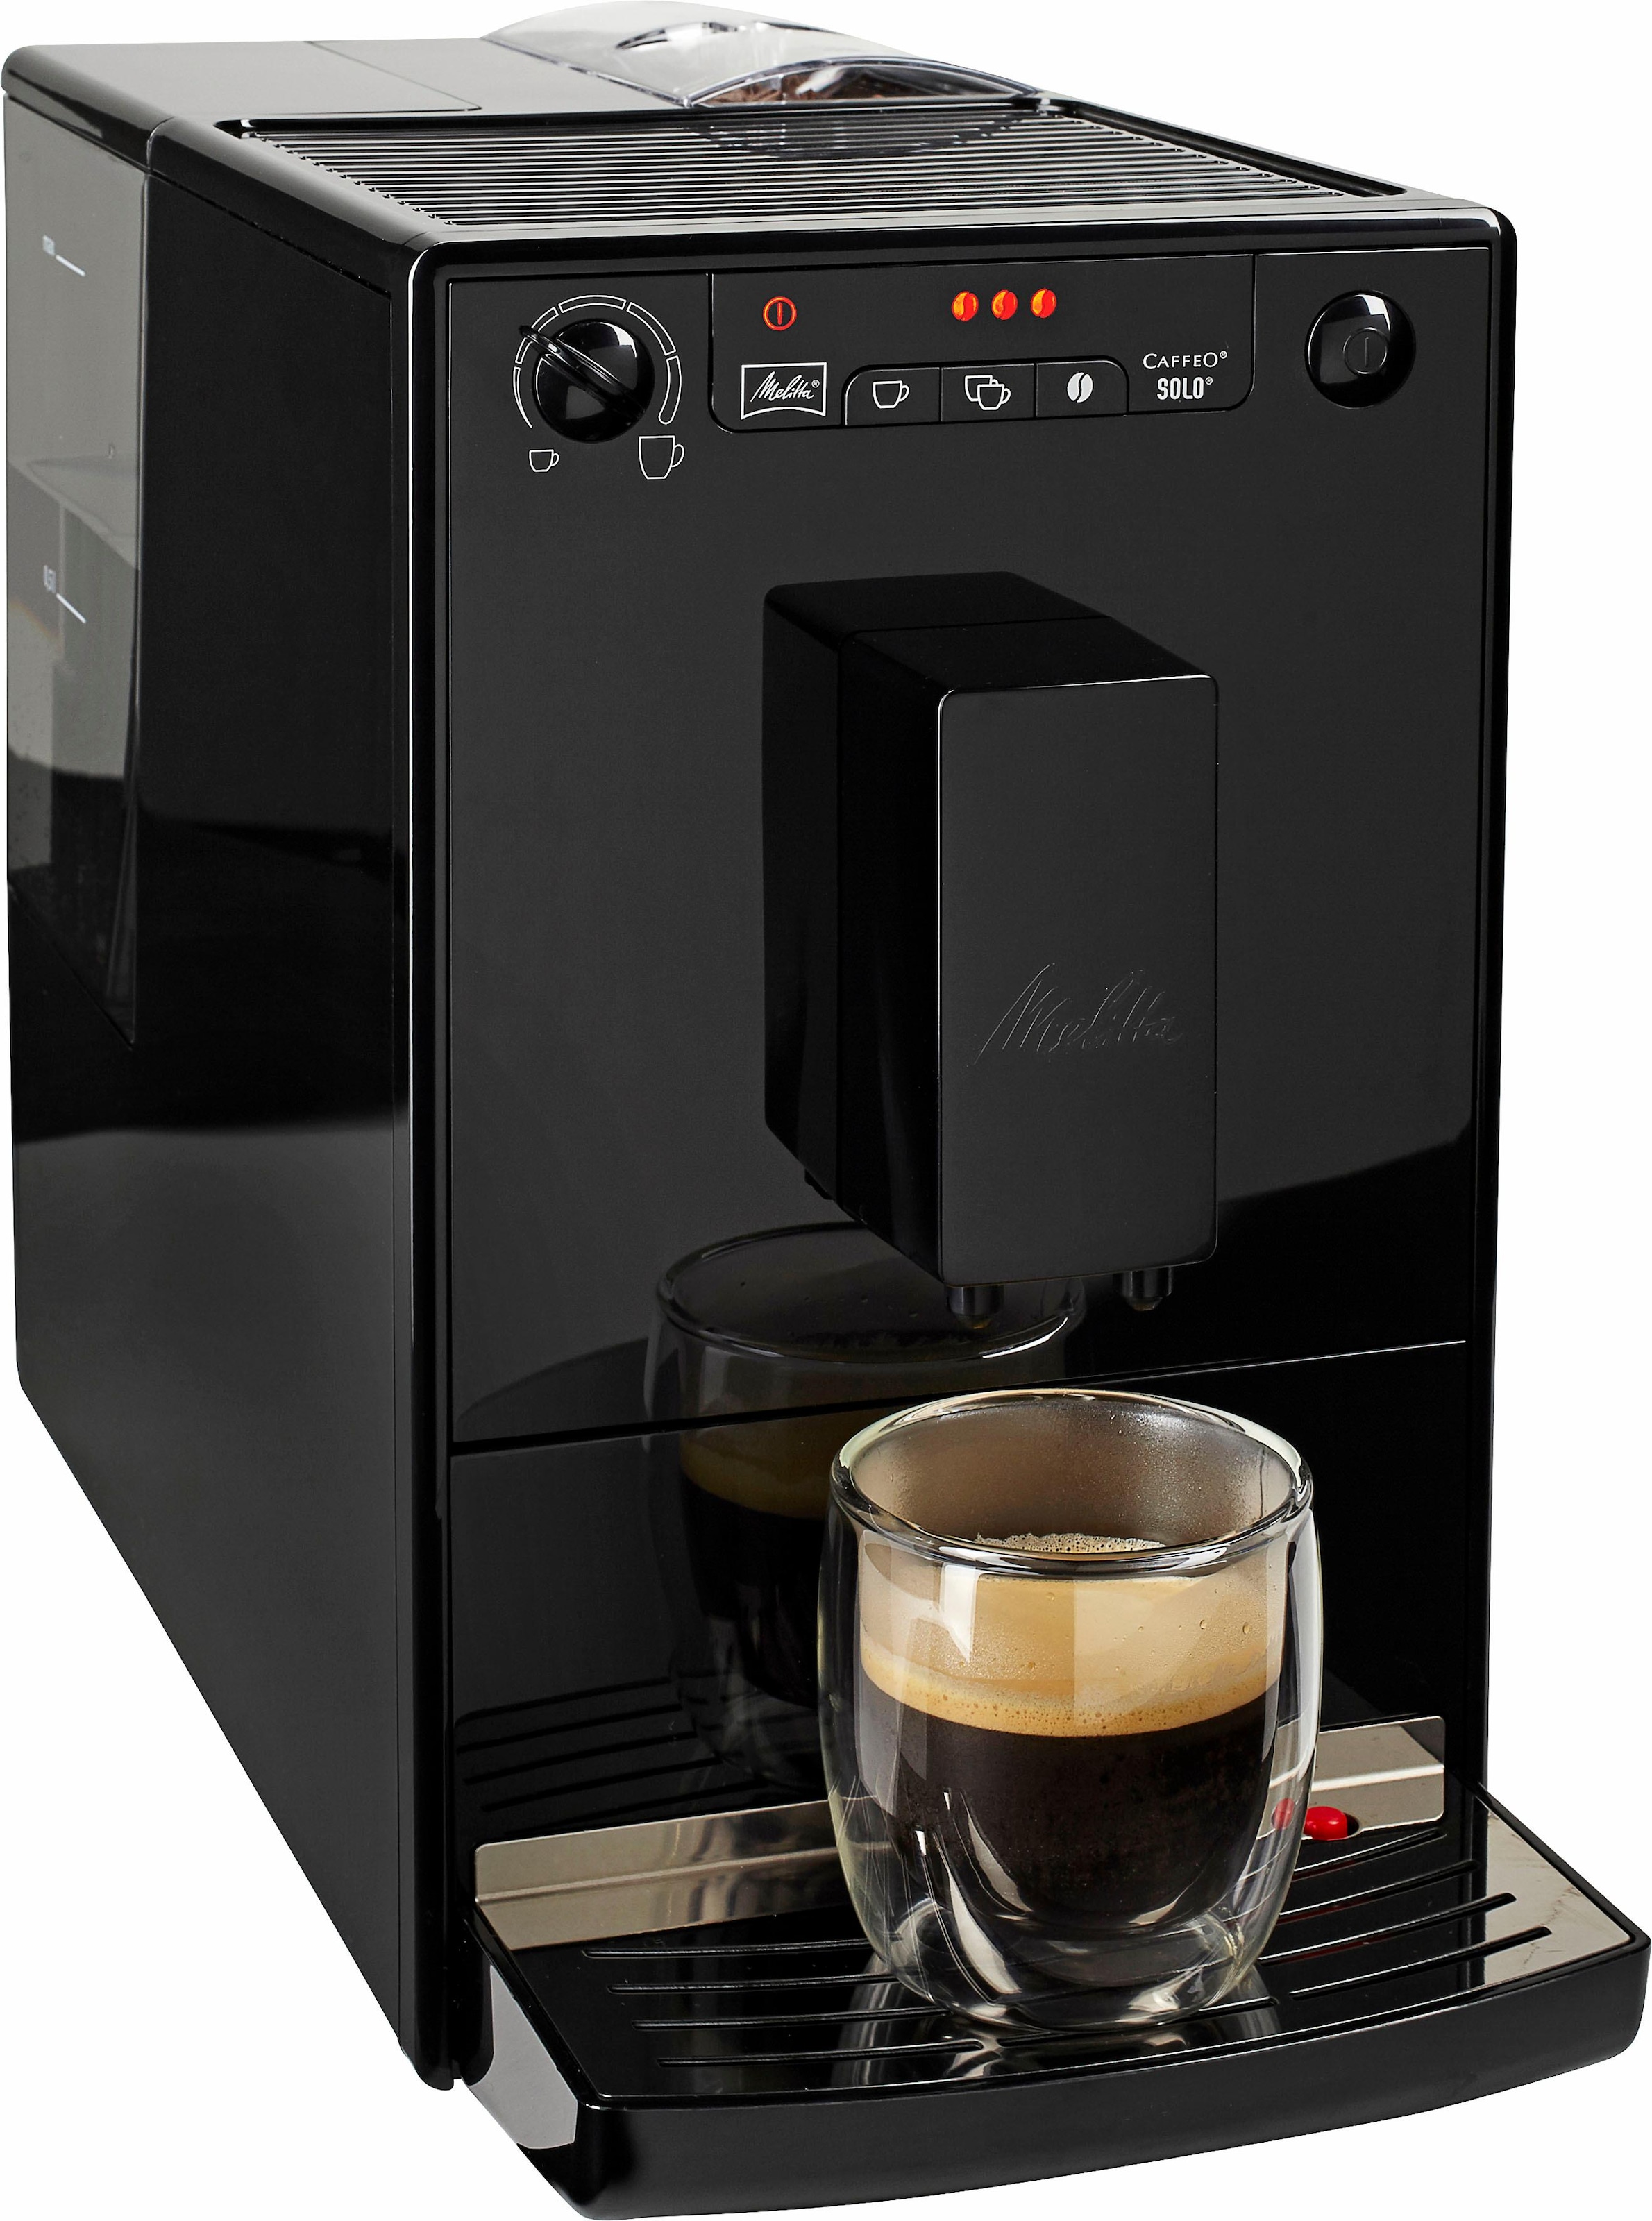 Melitta Kaffeevollautomat "Solo E950-322, pure black", aromatischer Kaffee & Espresso bei nur 20 cm Breite